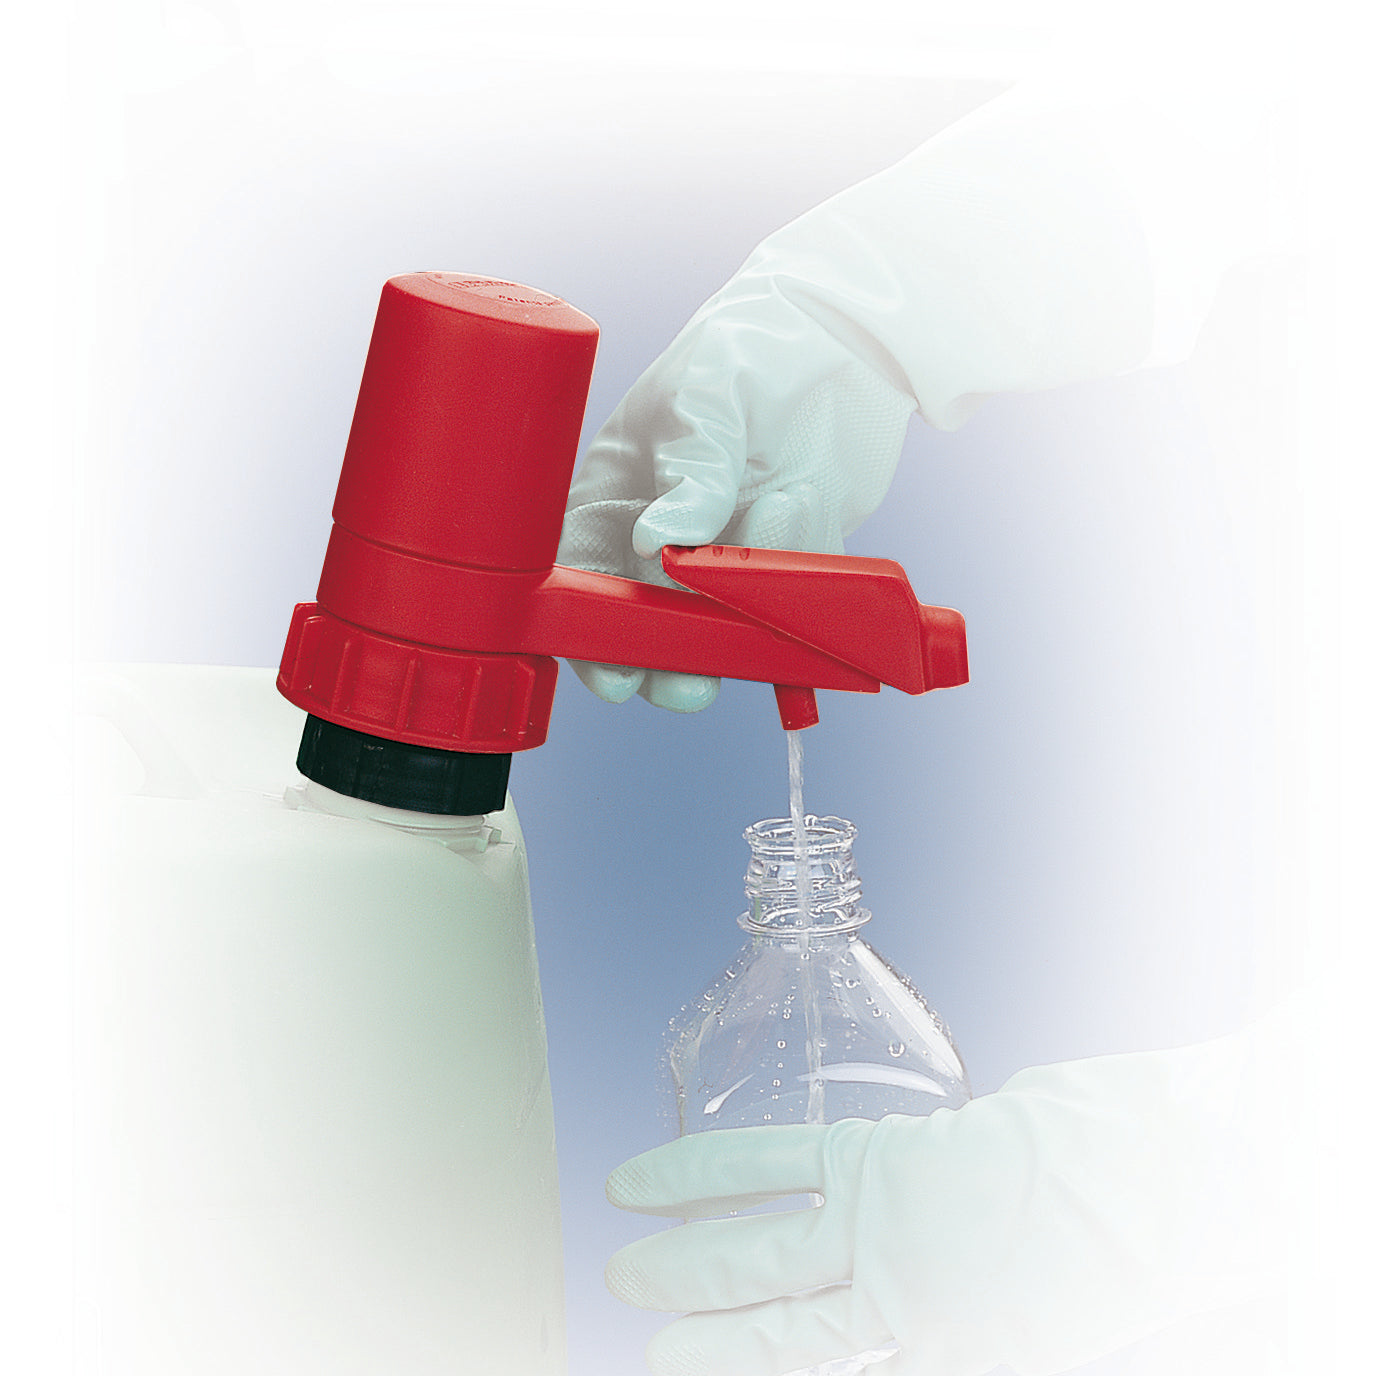 Pompe de réservoir en polyprophylène, PE, FKM pour récipients jusqu'à 60 litres, rouge, polypropylène